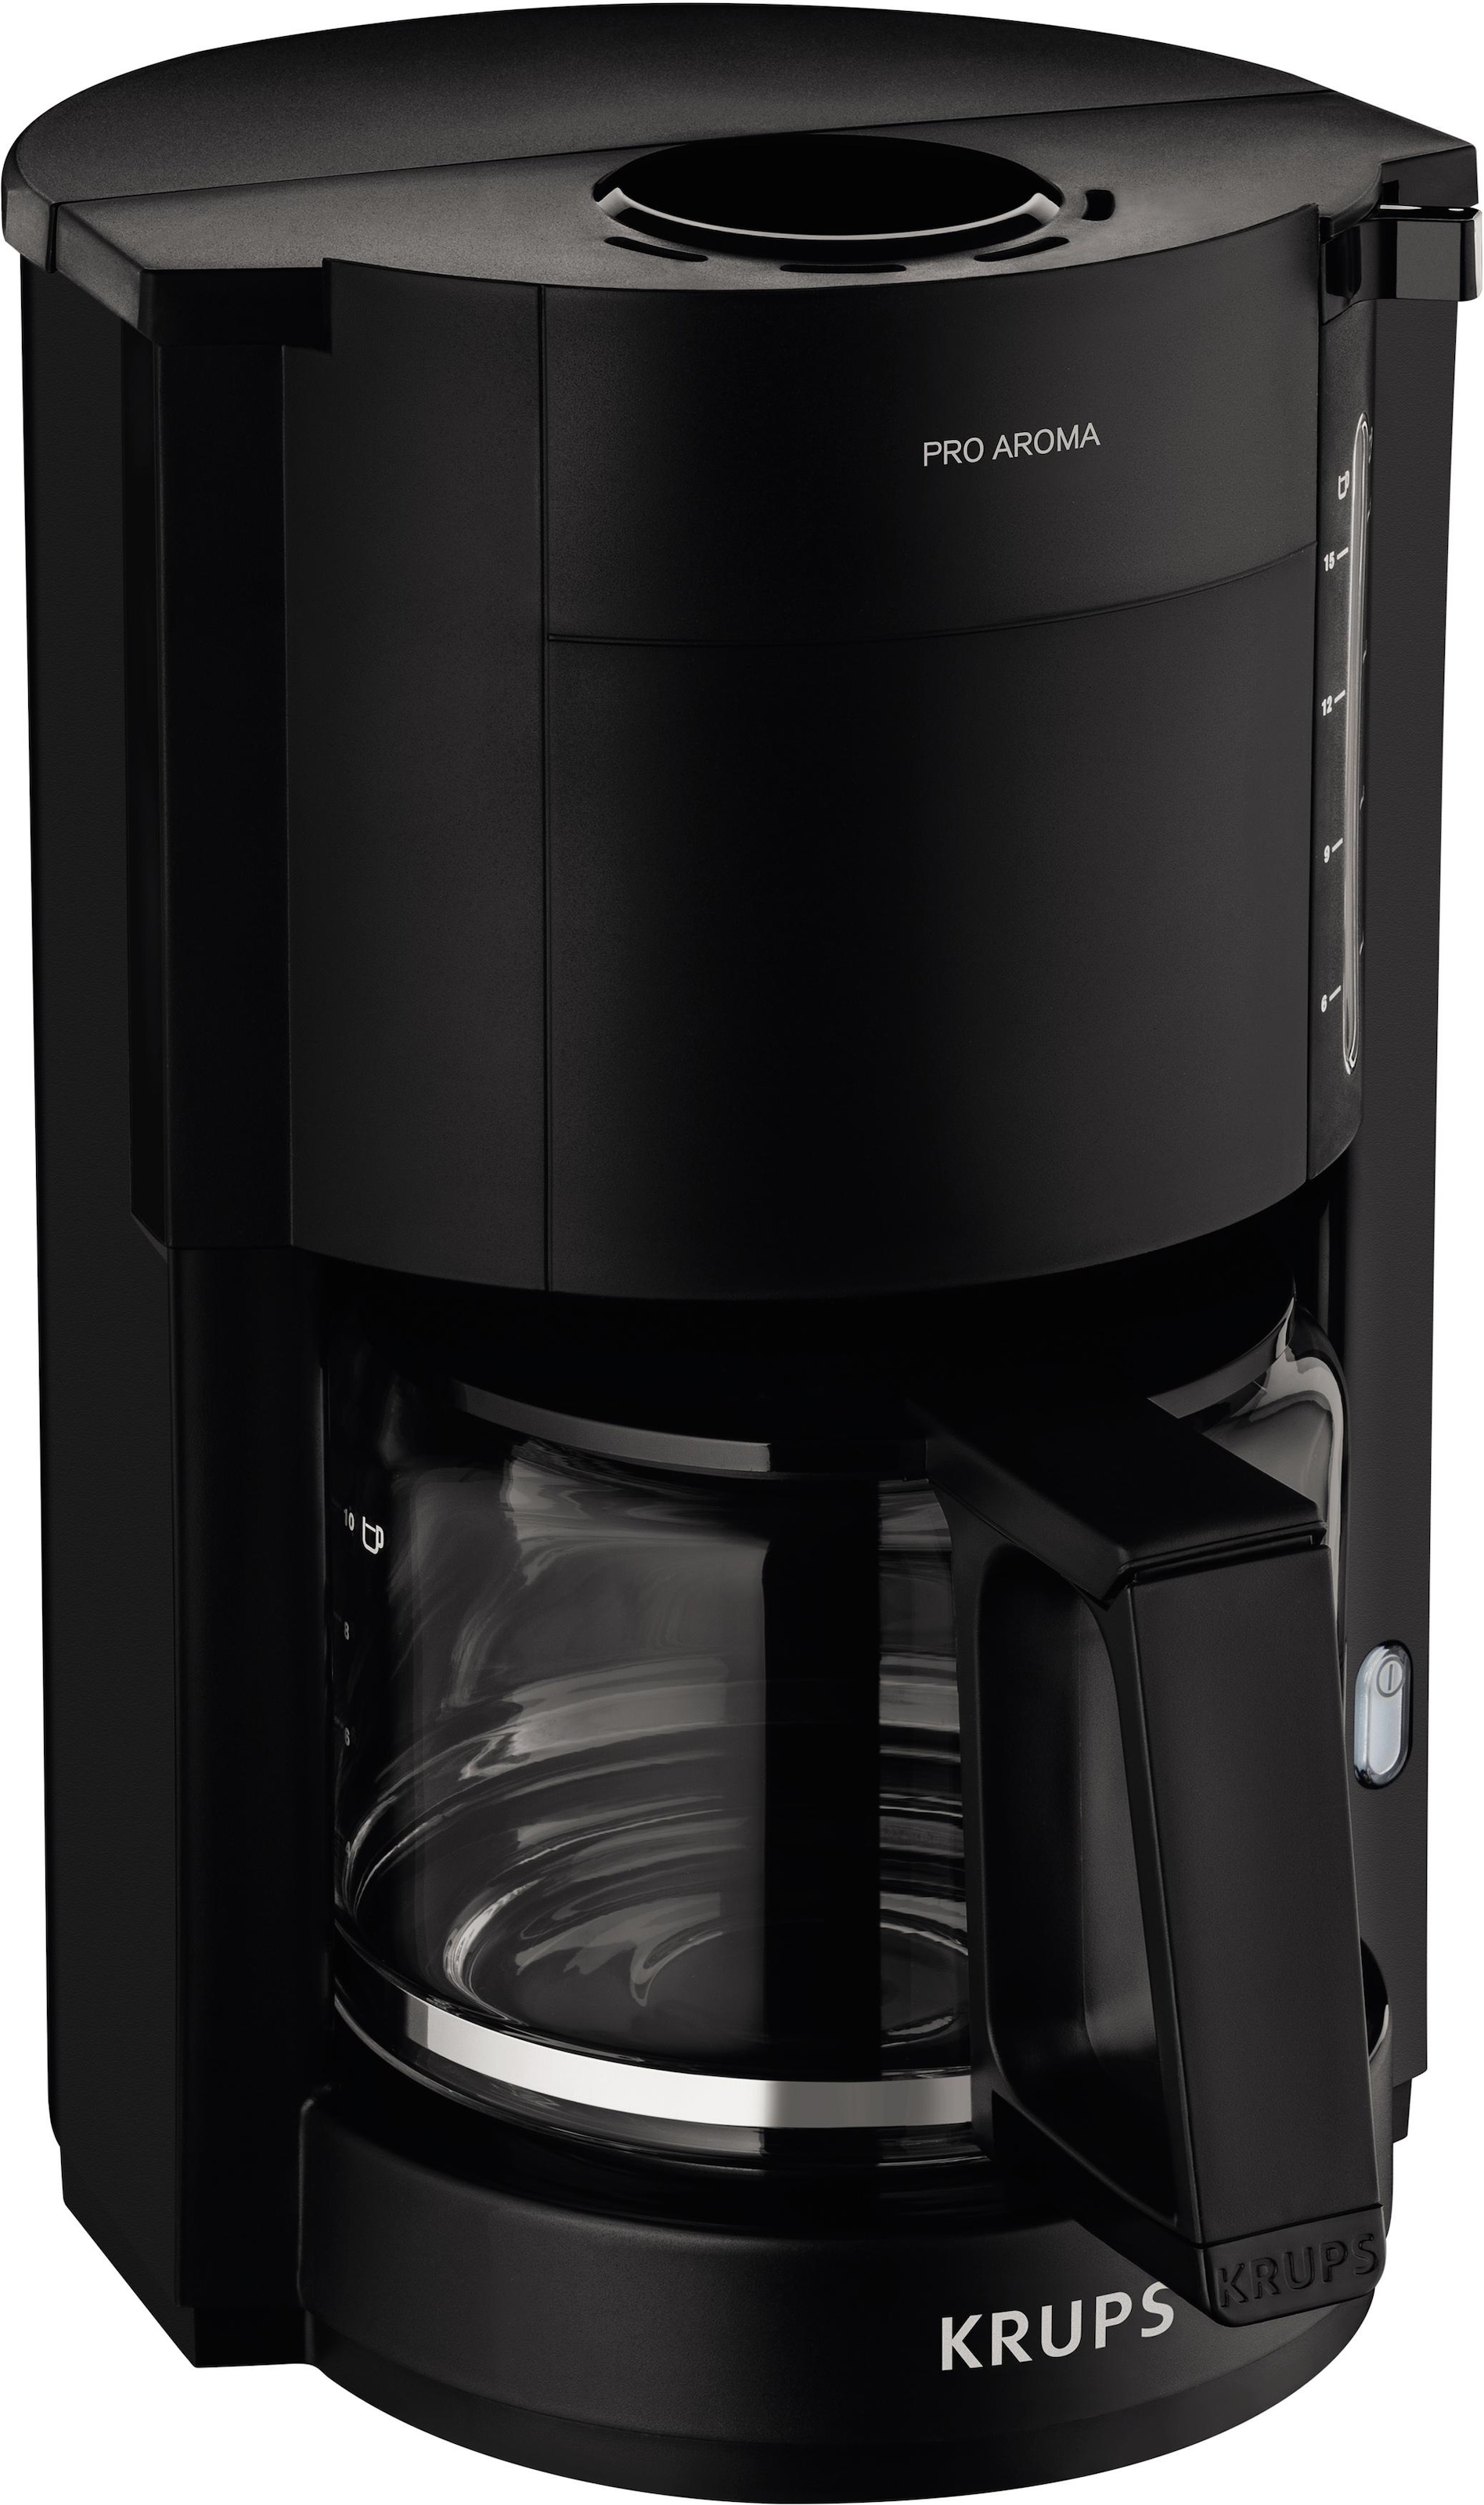 Krups Filterkaffeemaschine "F30908 Pro Aroma", mit Glaskanne, 1,25L Füllmenge, 10-15 Tassen, 1050W, Schwarz